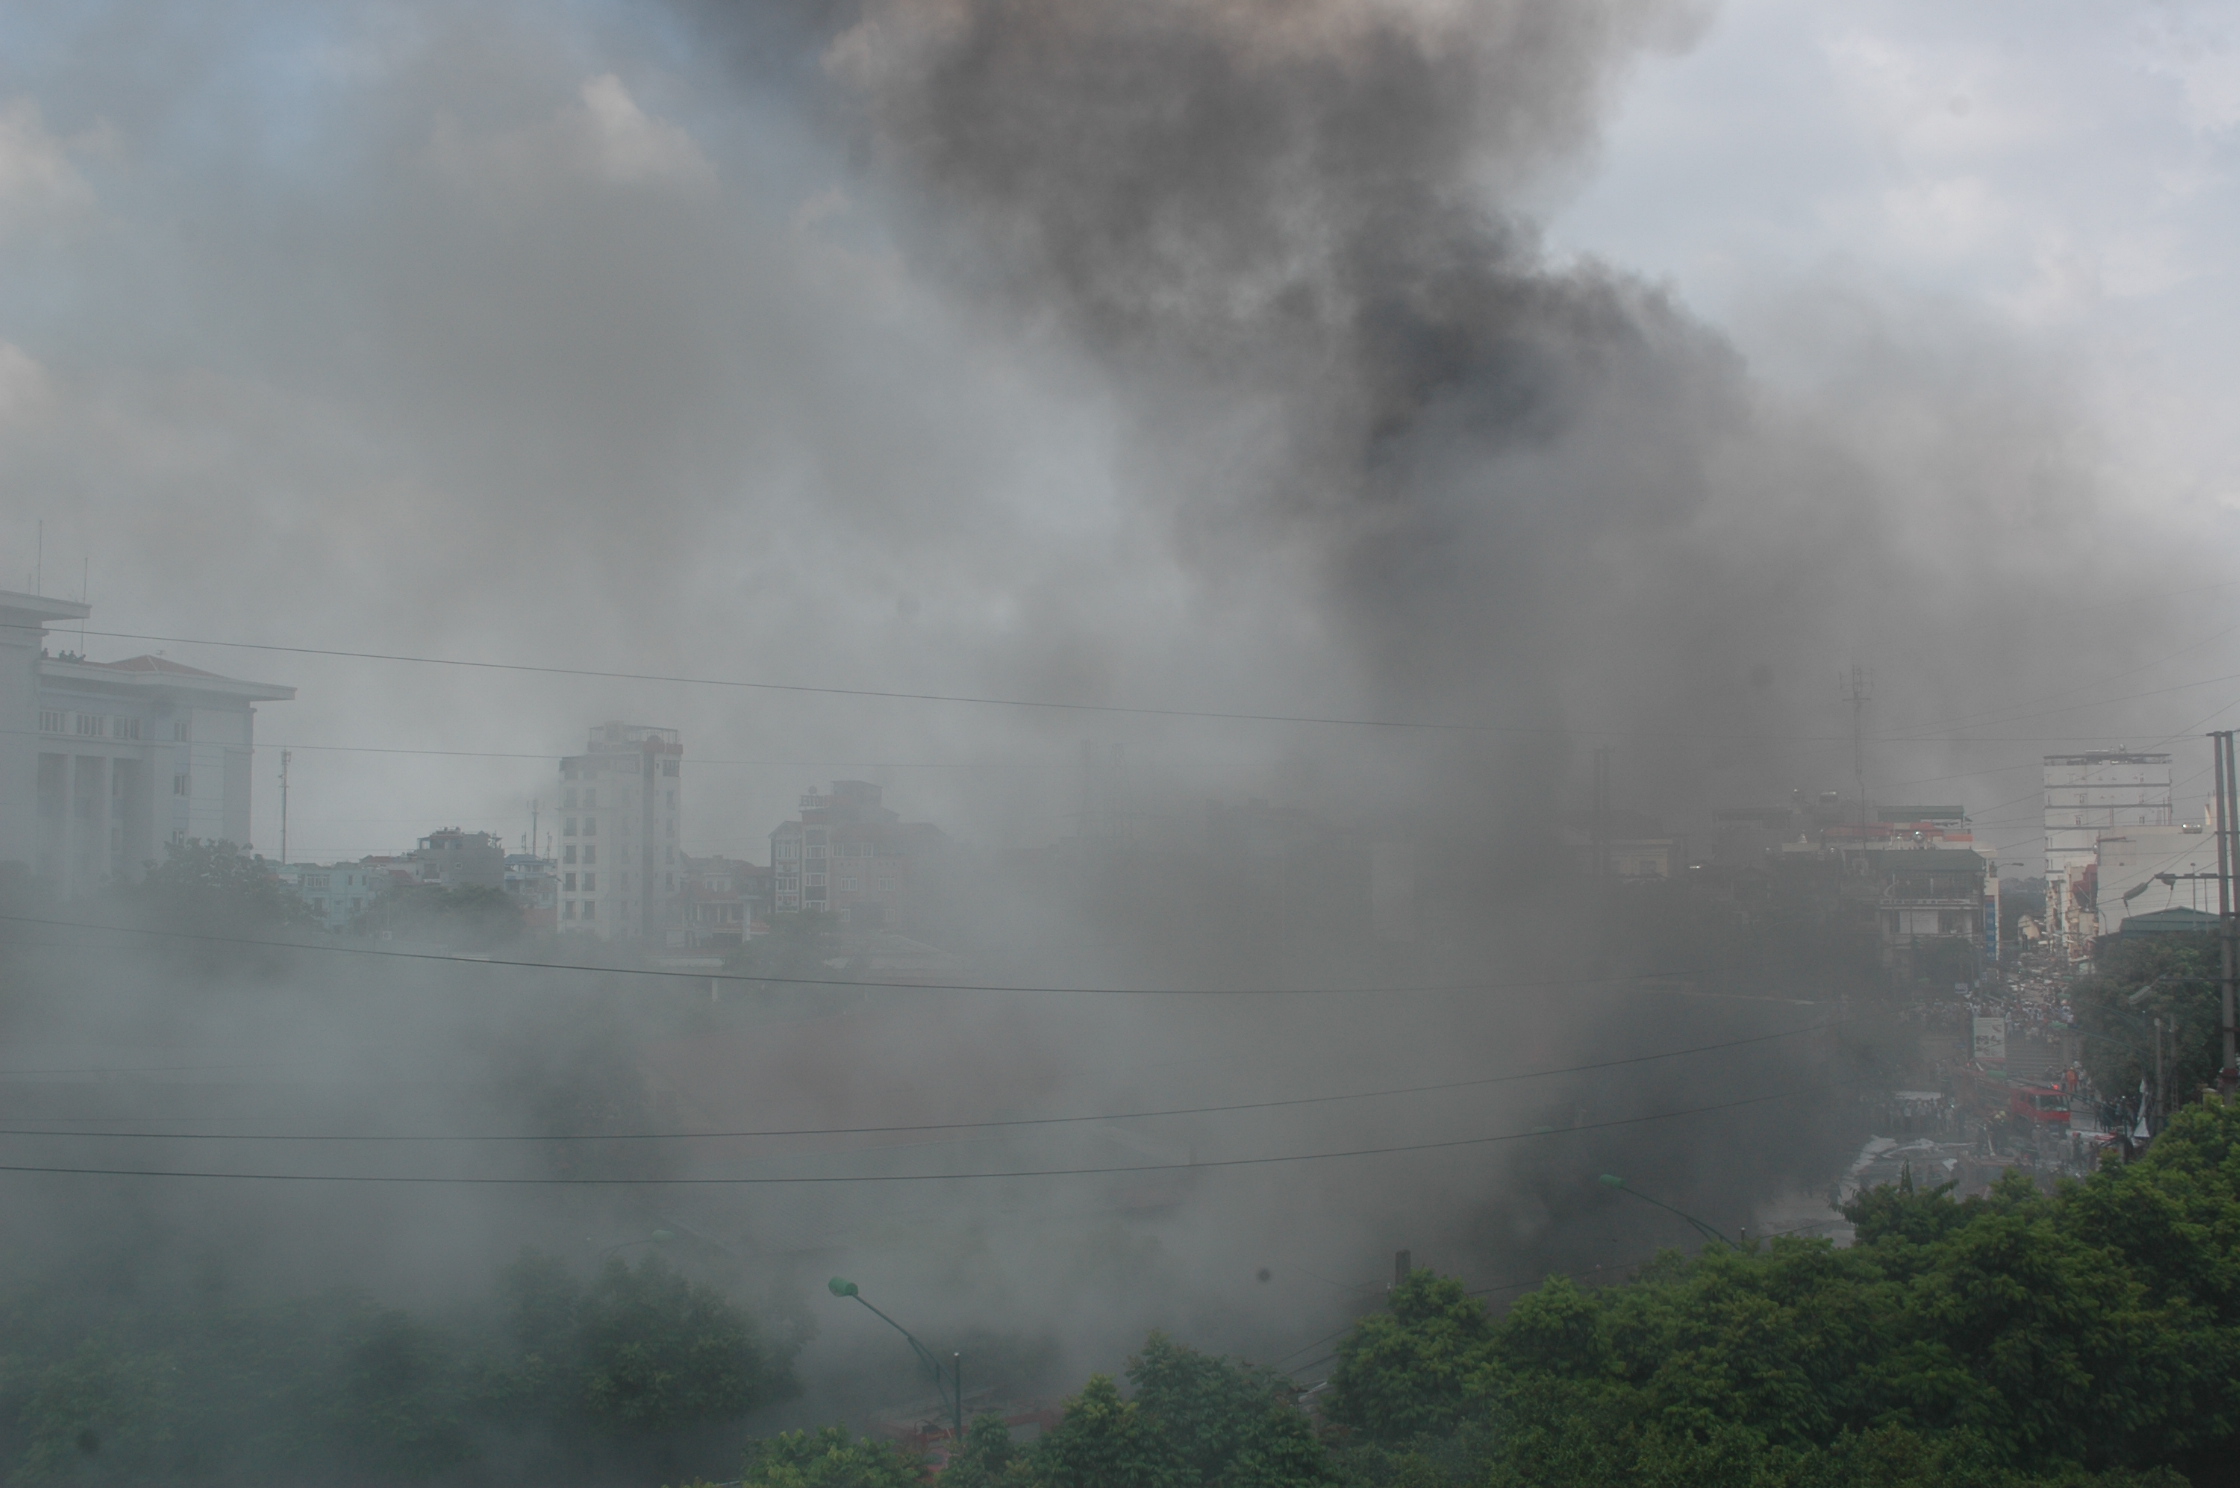 Xã hội - Ảnh: Hiện trường vụ cháy nổ cây xăng gần viện 108 (Hình 5).